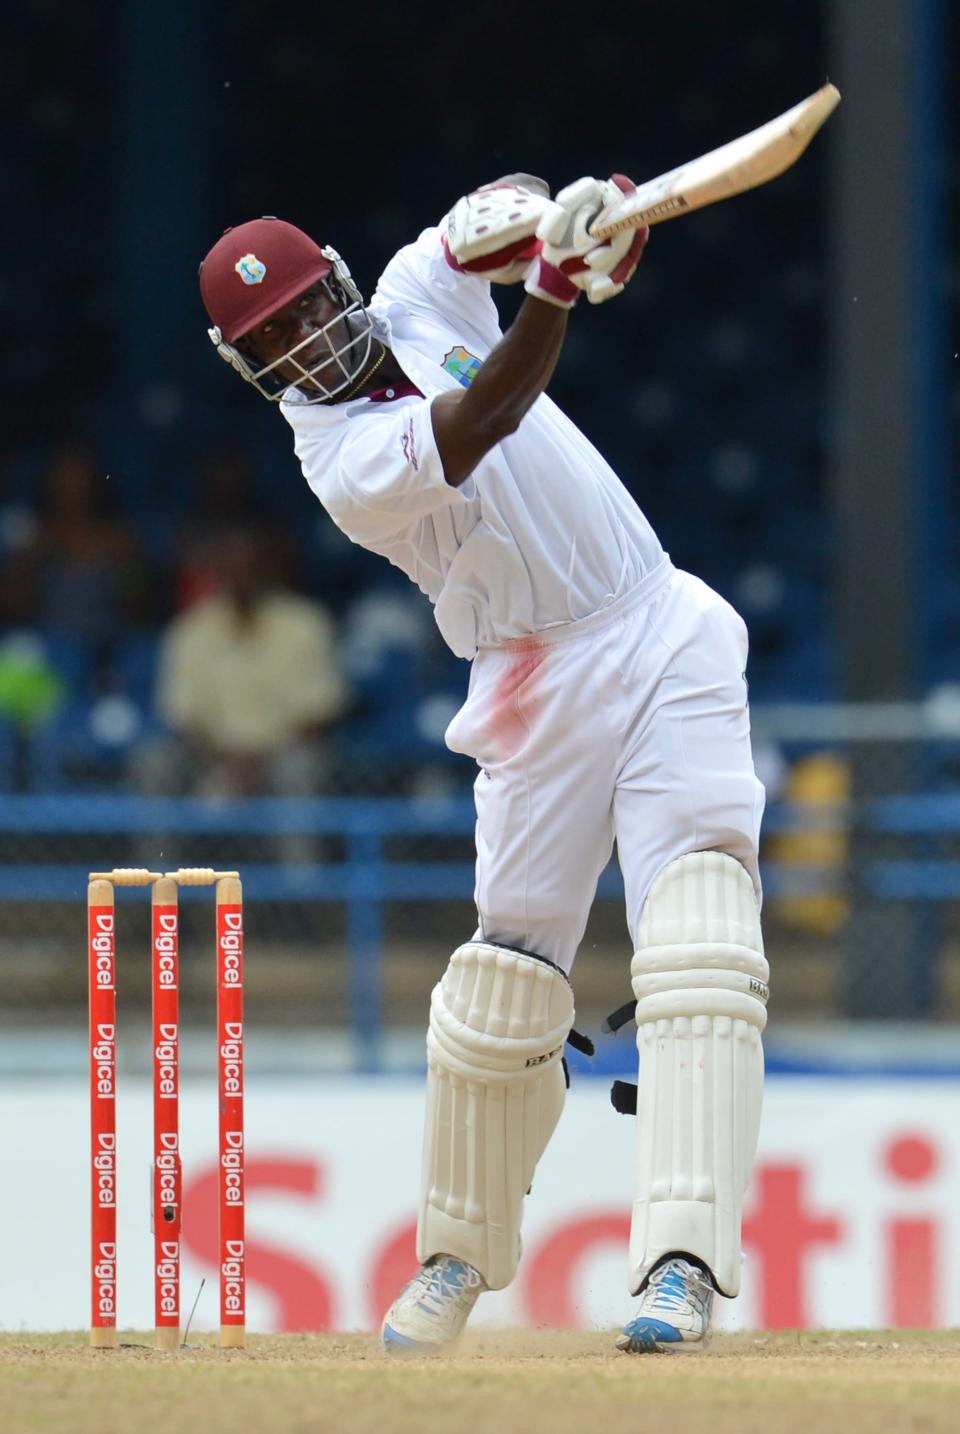 West Indies Darren Sammy launches a six